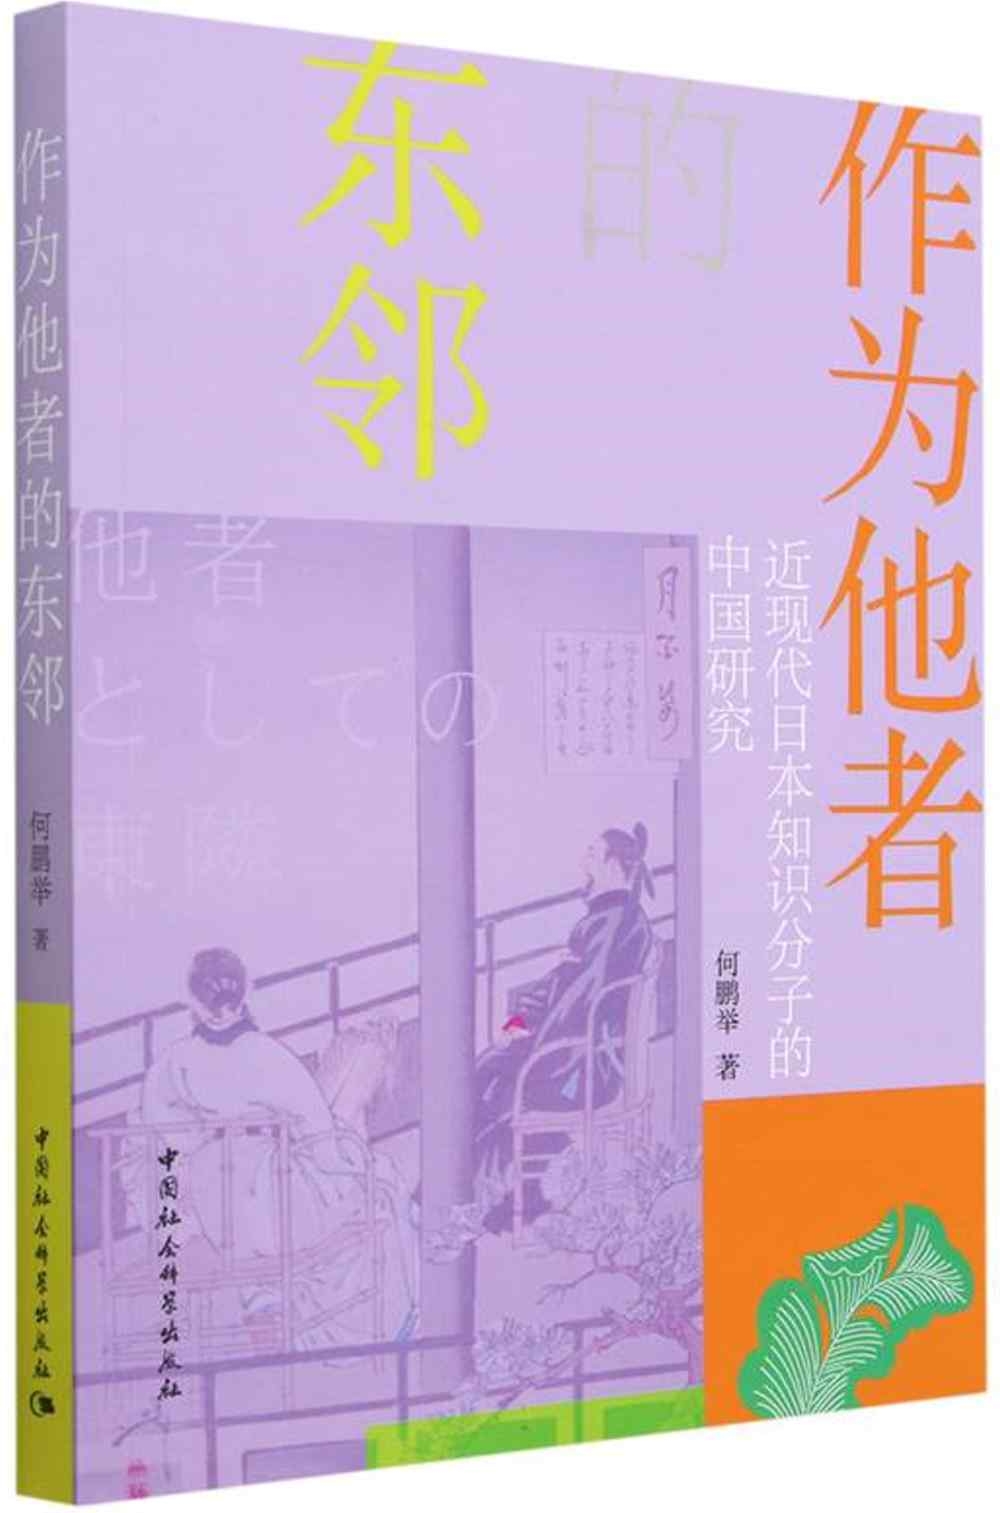 作為他者的東鄰：近現代日本知識分子的中國研究